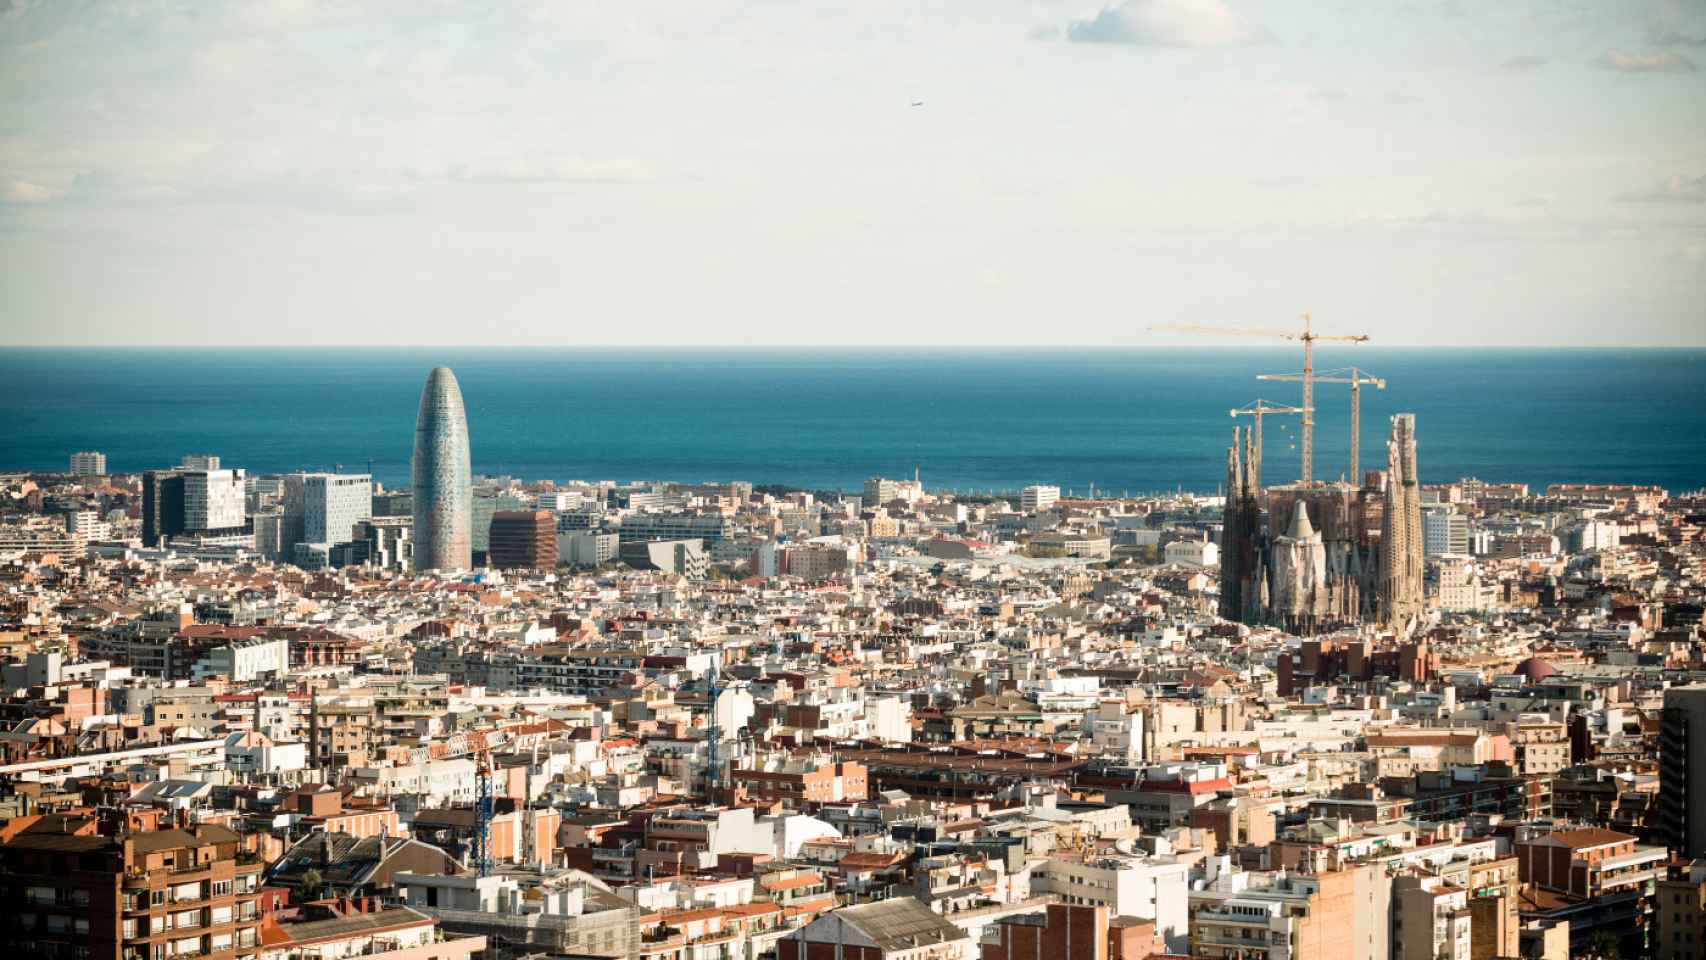 Imagen panorámica de Barcelona